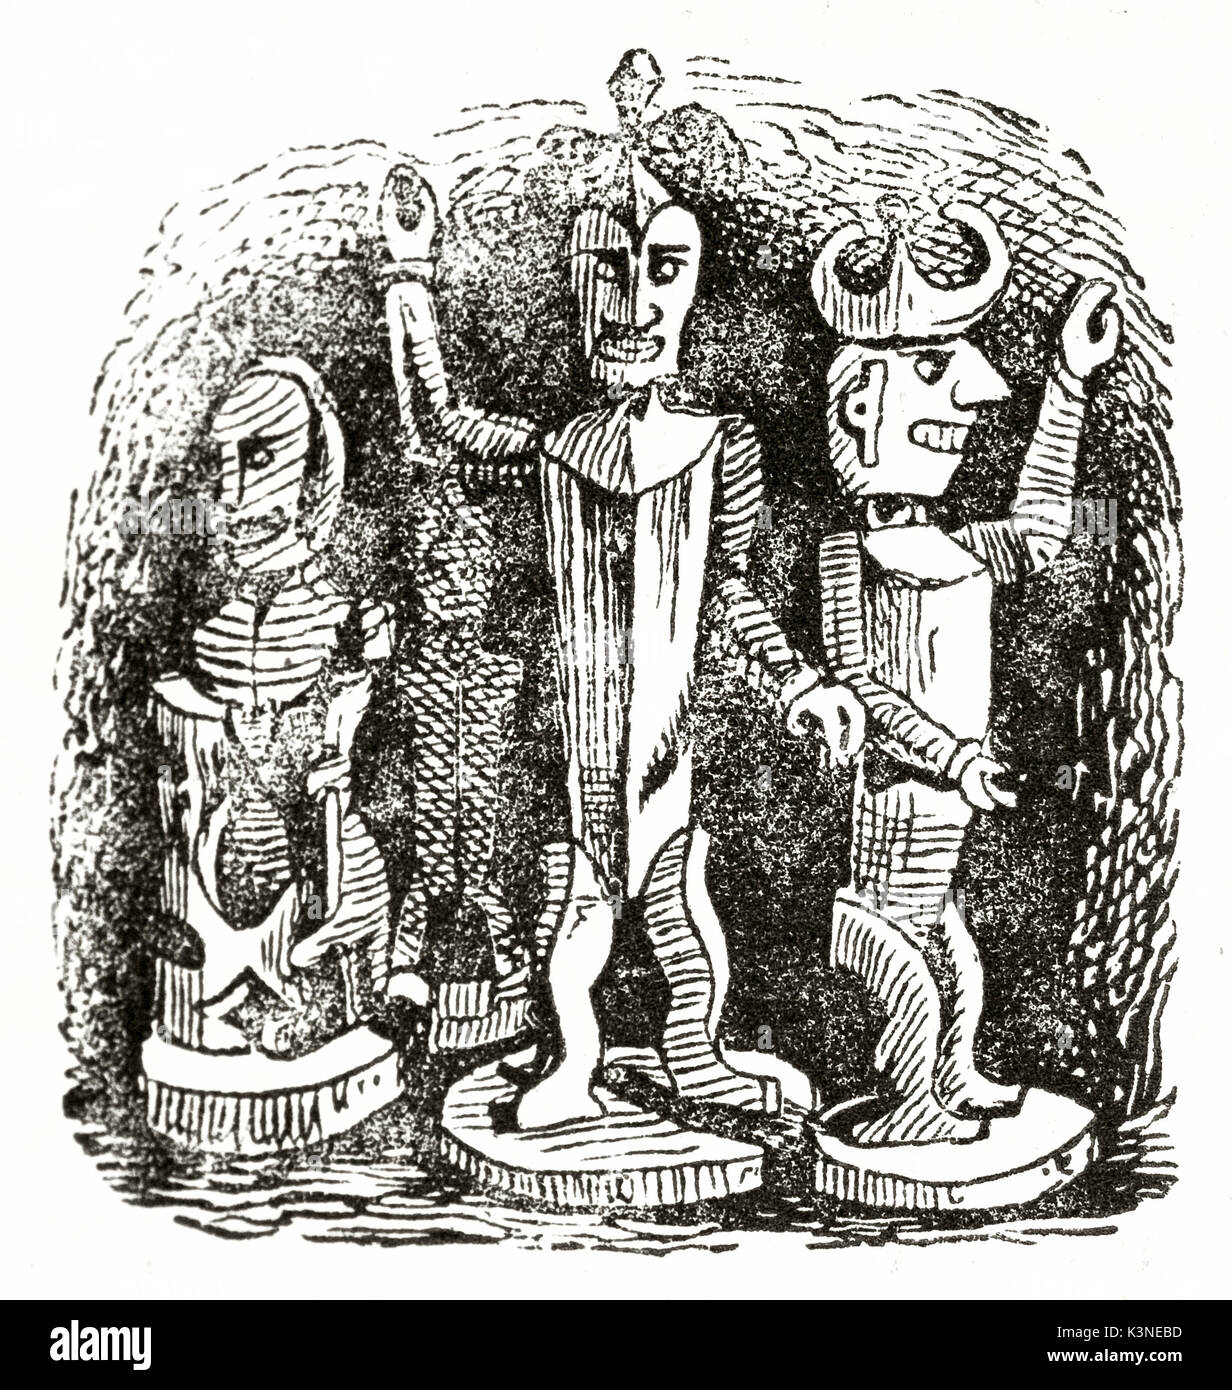 Il vecchio ruvido illustrazione di tre piccoli Nuova Zelanda idoli scolpiti statuette. Da autore non identificato pubblicato il Magasin pittoresco Parigi 1839 Foto Stock